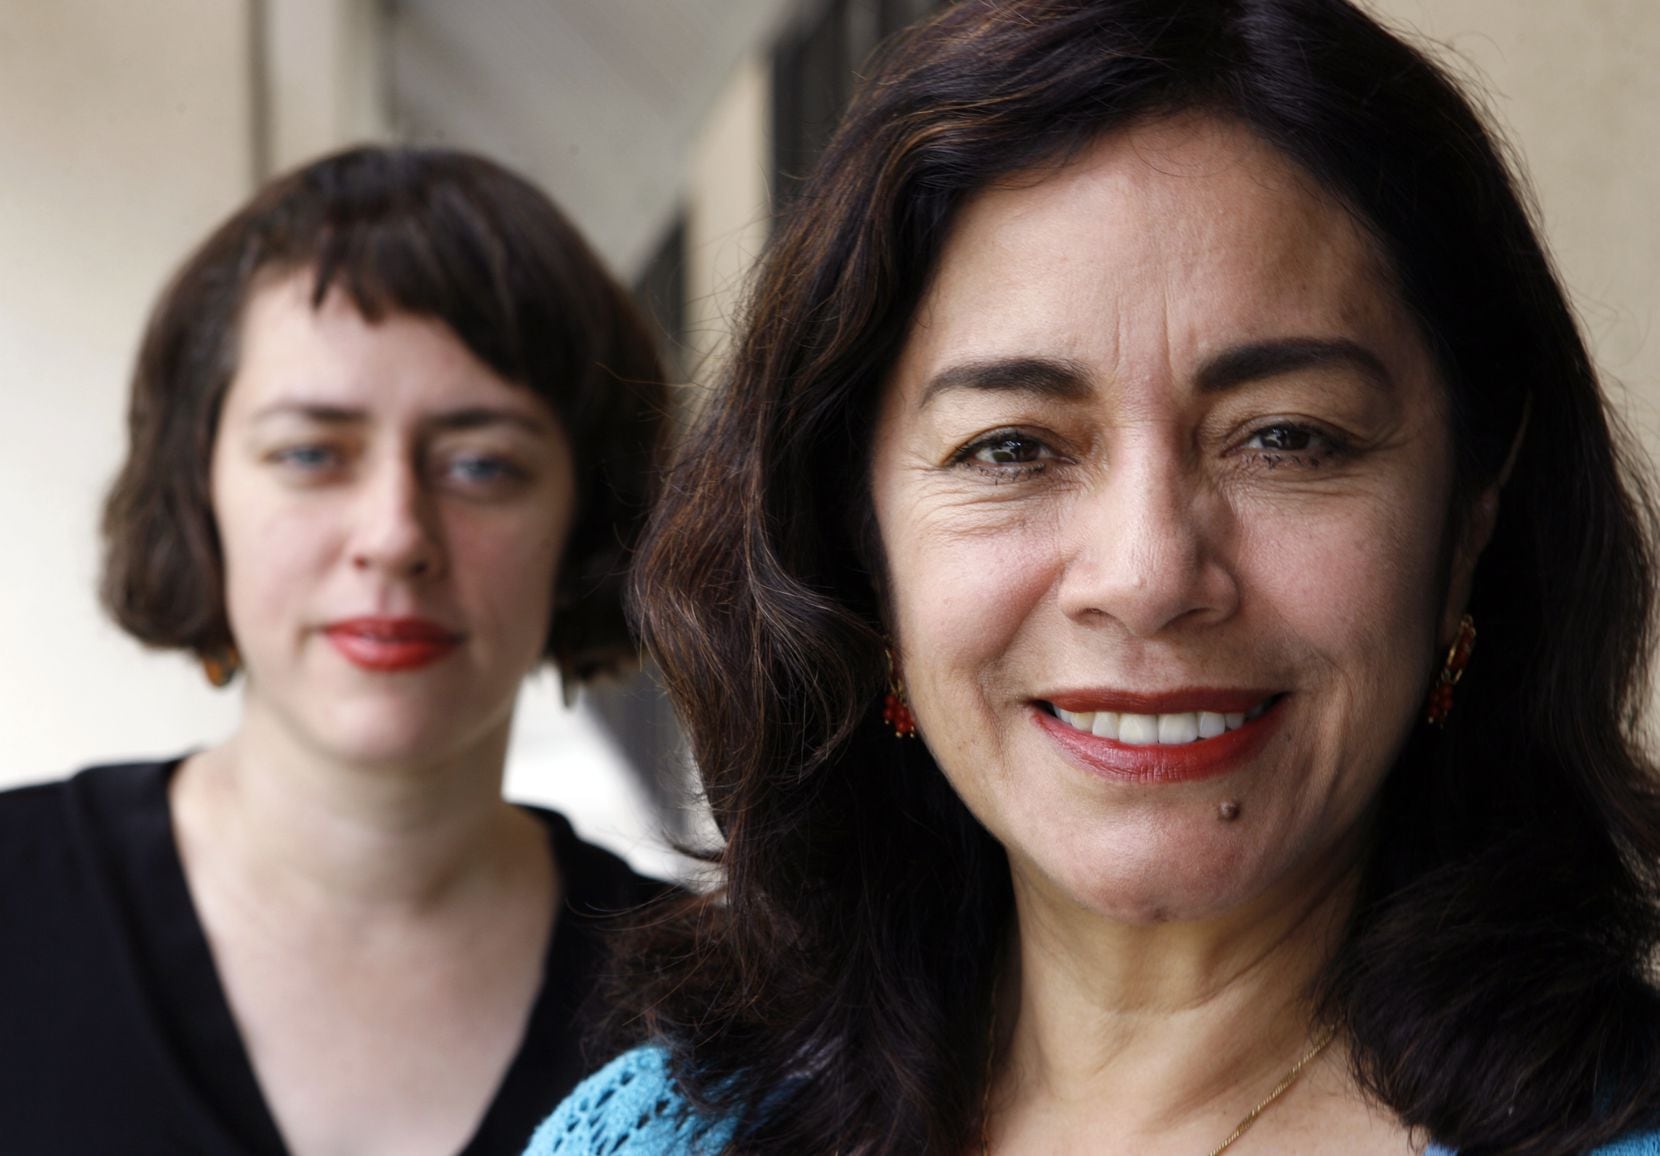 Teatro Dallas executive artistic director Sara Cardona, left, with her mother, Cara Cardona,...